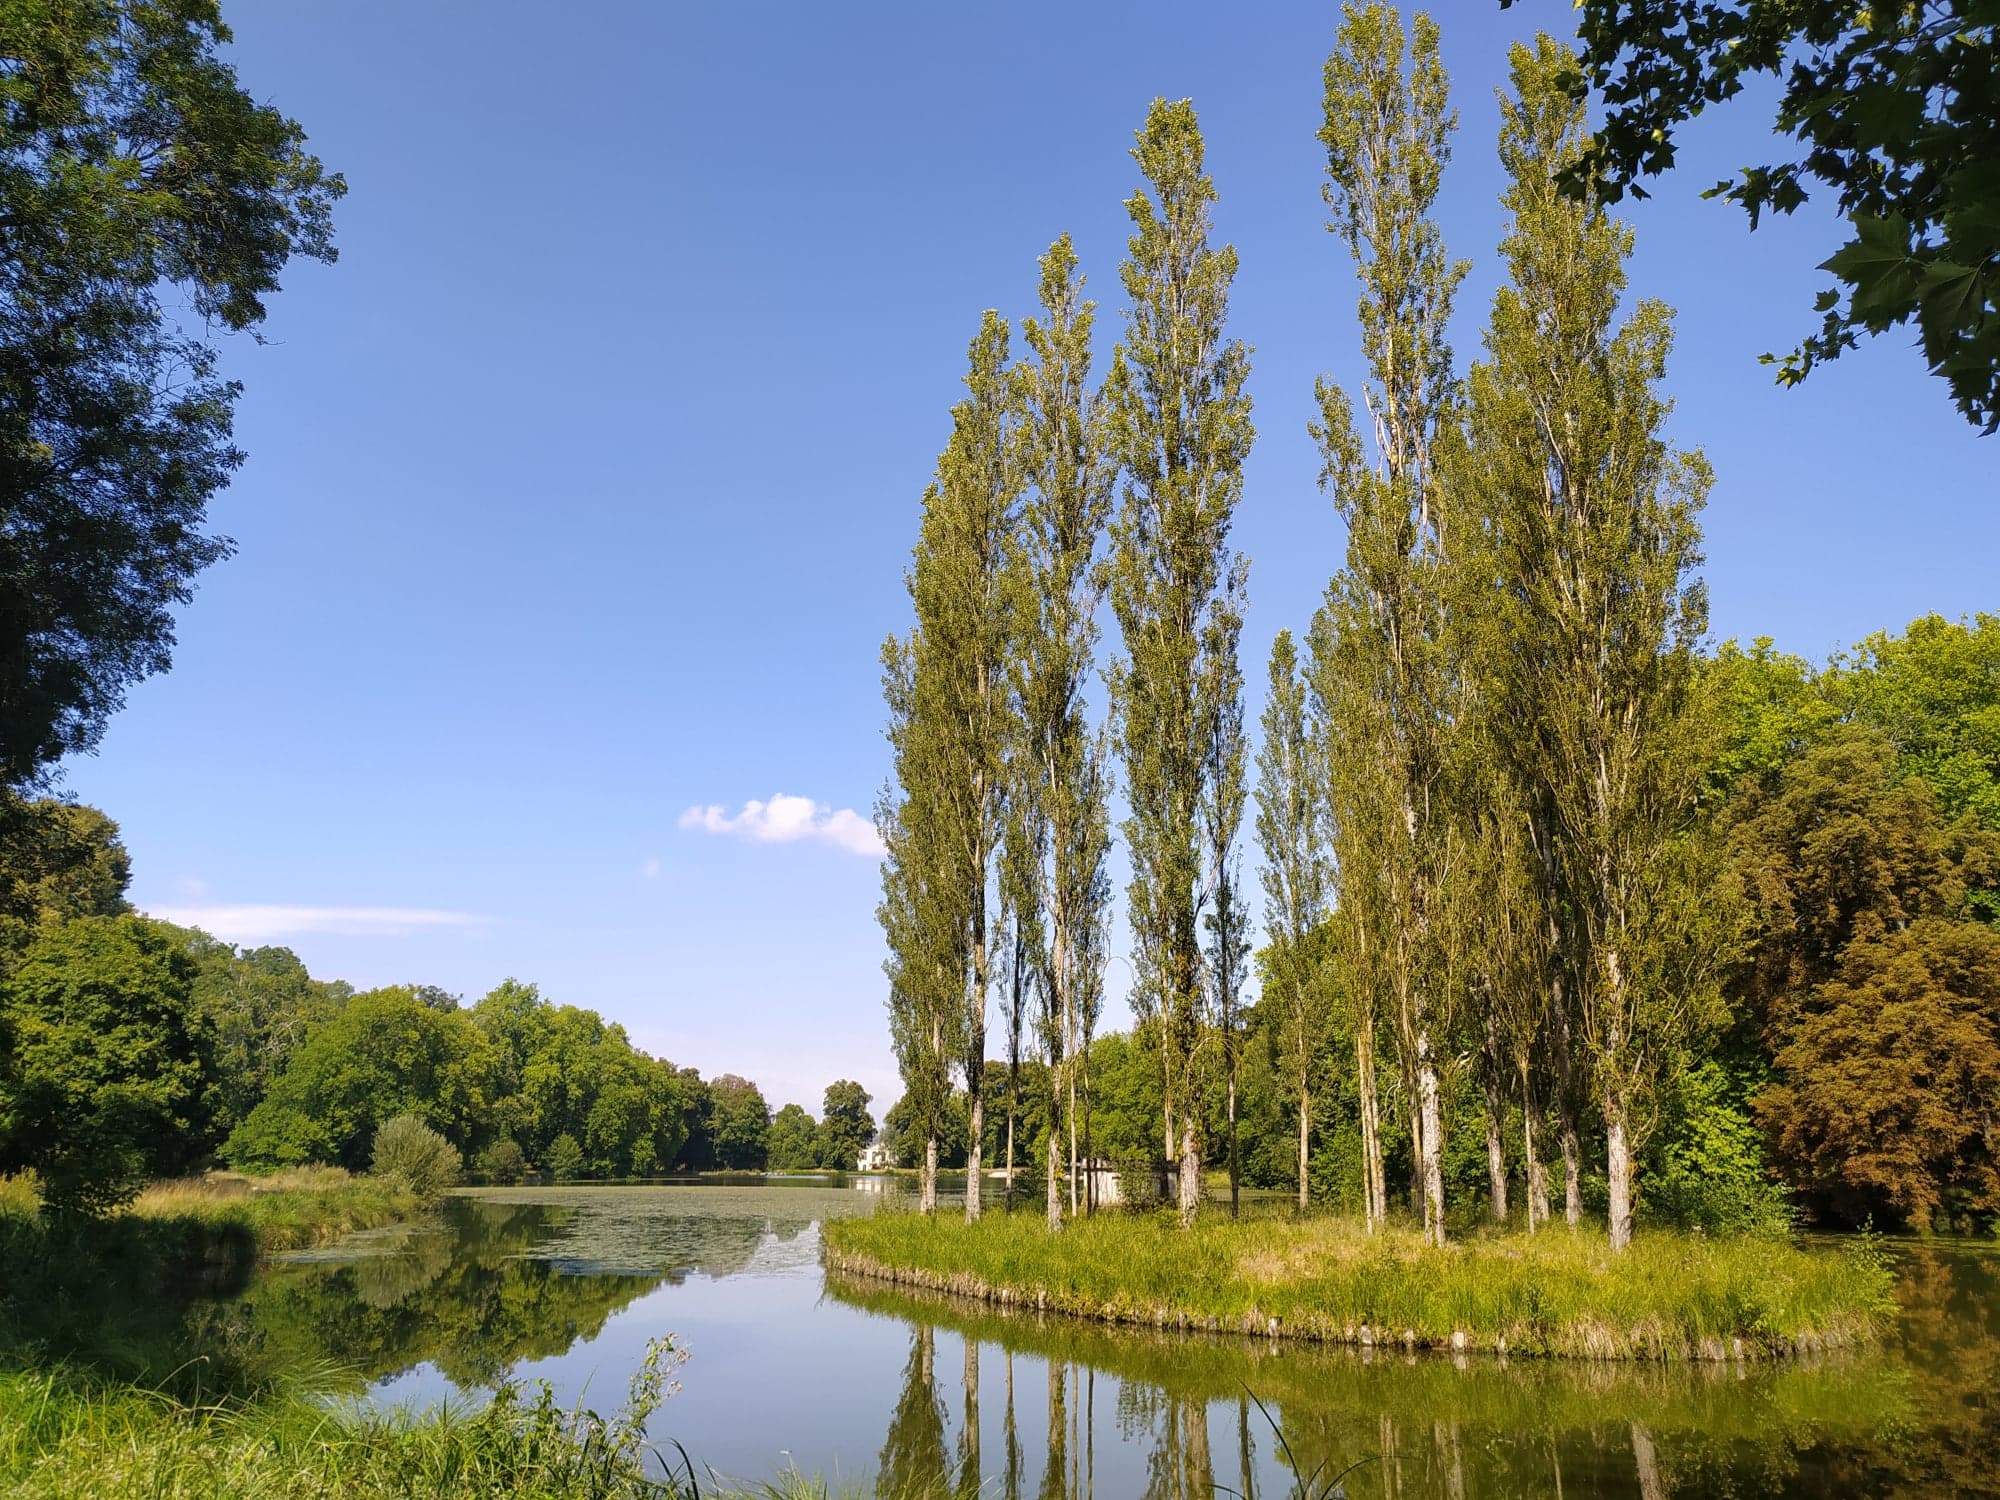 Sortie nature "Les plantes et leur milieu : un lien indissociable" au Parc Jean-Jacques Rousseau d'Ermenonville (Oise)